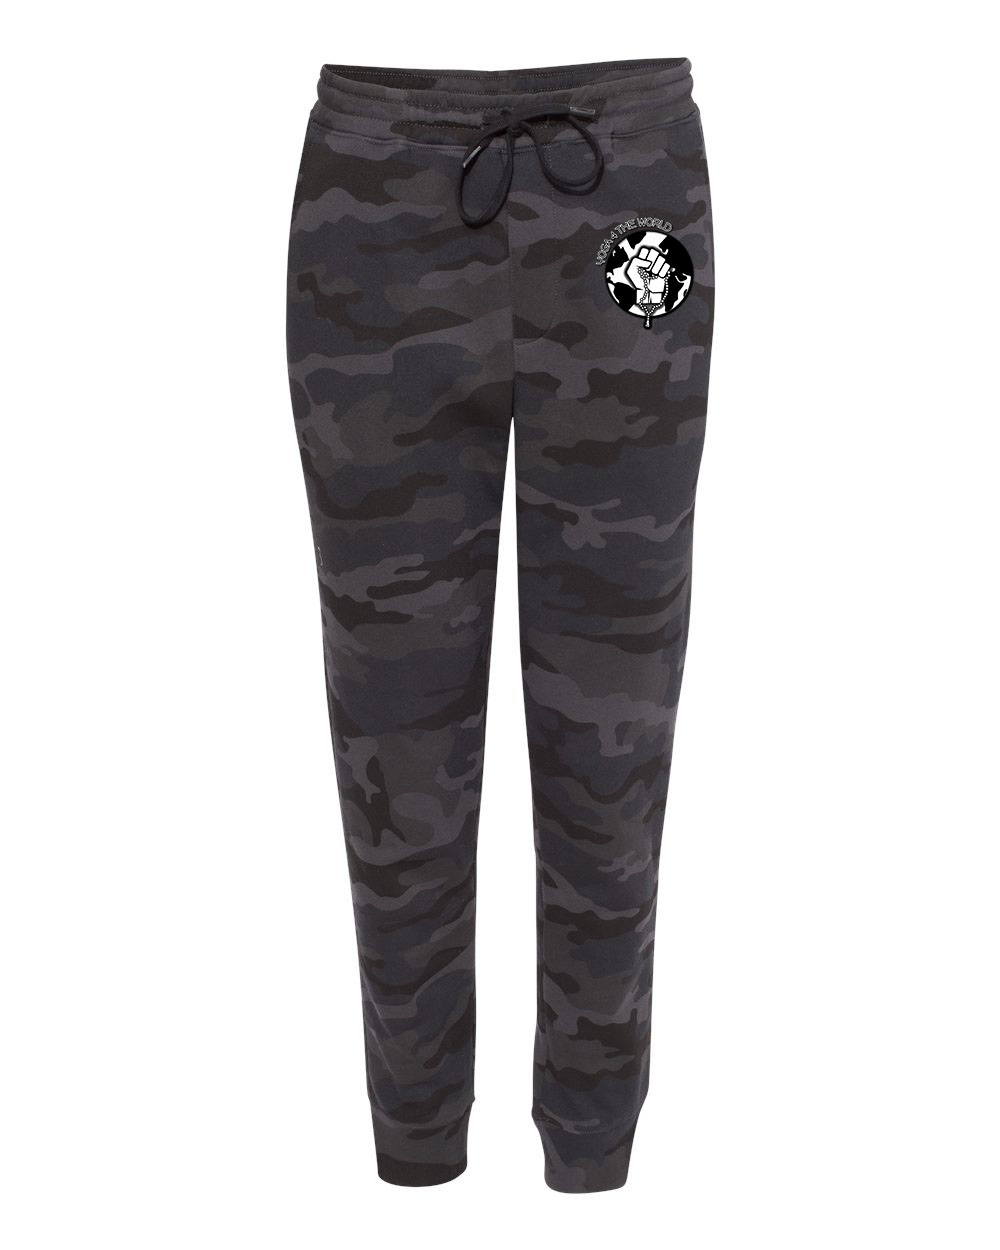 Yoga4TheWorld Black Camo Fleece Pants